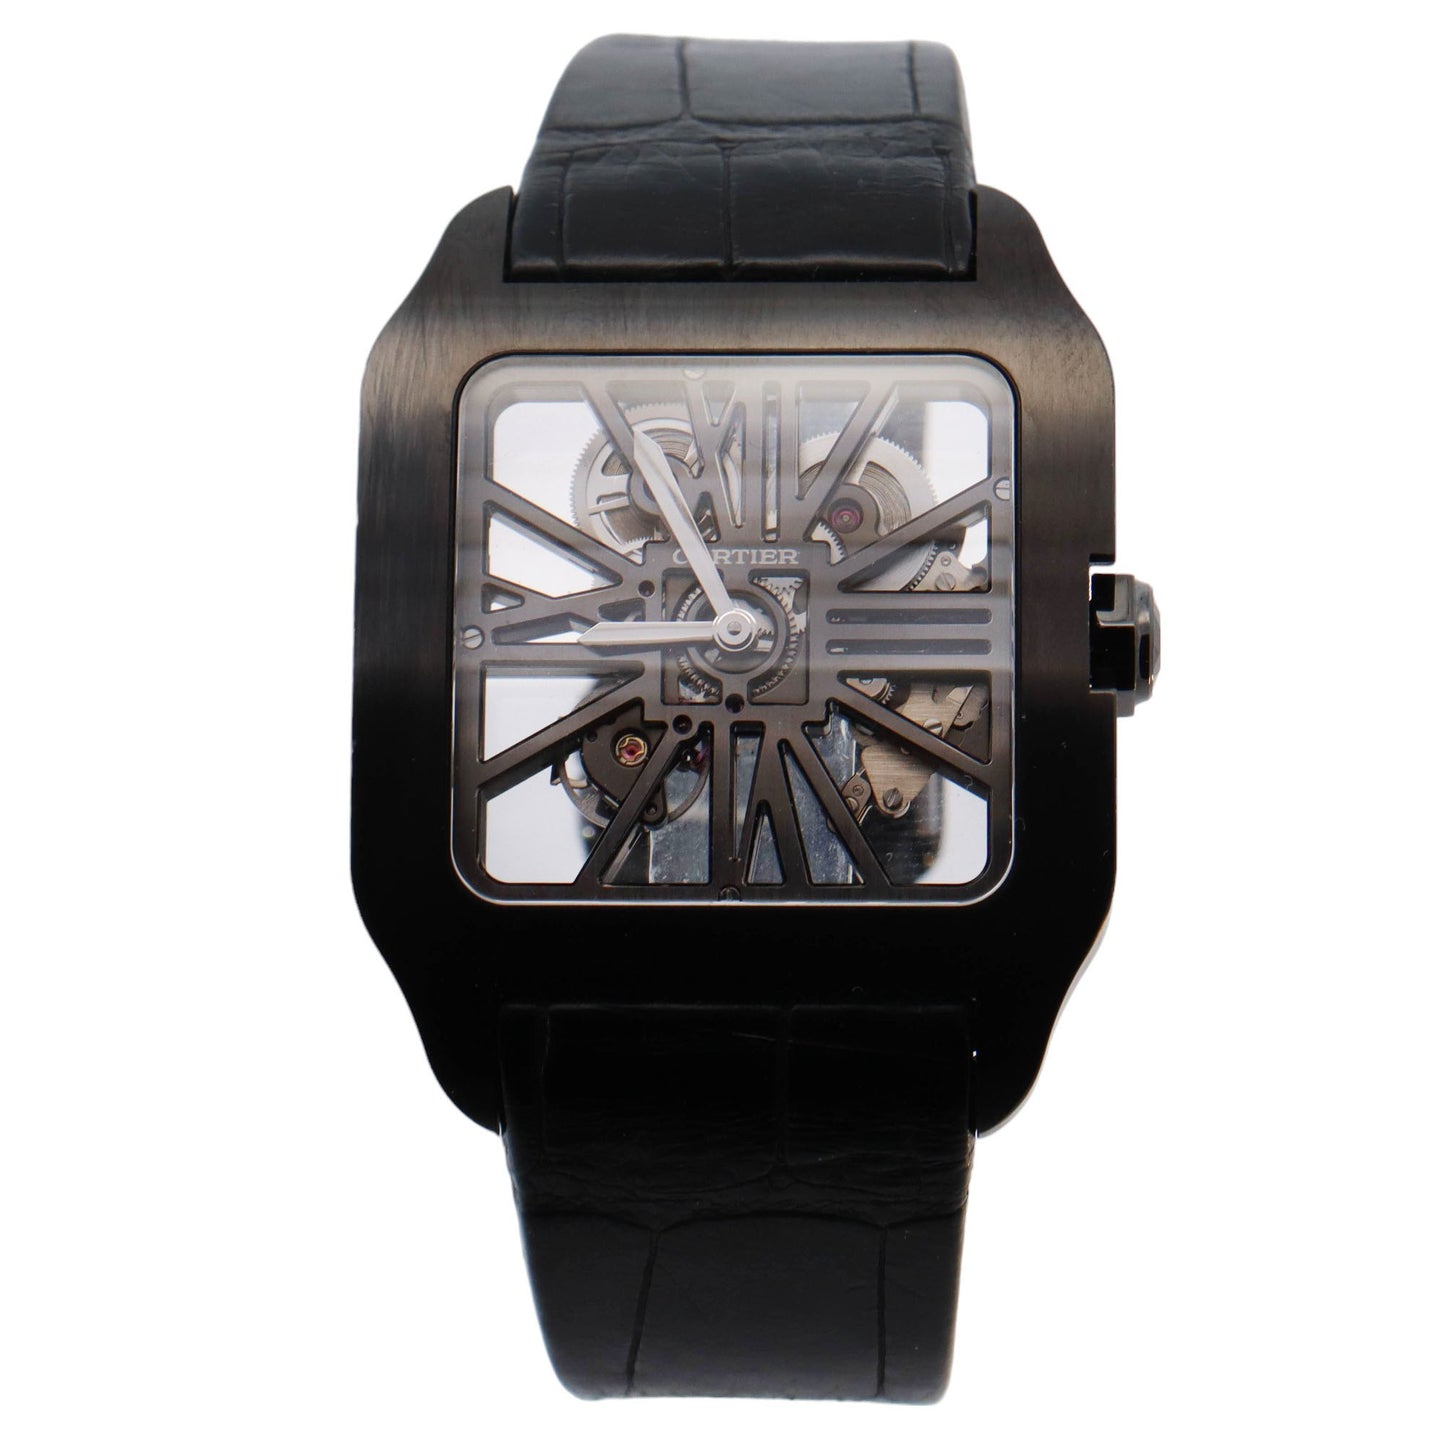 Cartier Santos Dumont Titanium 47.4 x 36.6mm Skelton Dial Watch Reference# W2020052 - Happy Jewelers Fine Jewelry Lifetime Warranty